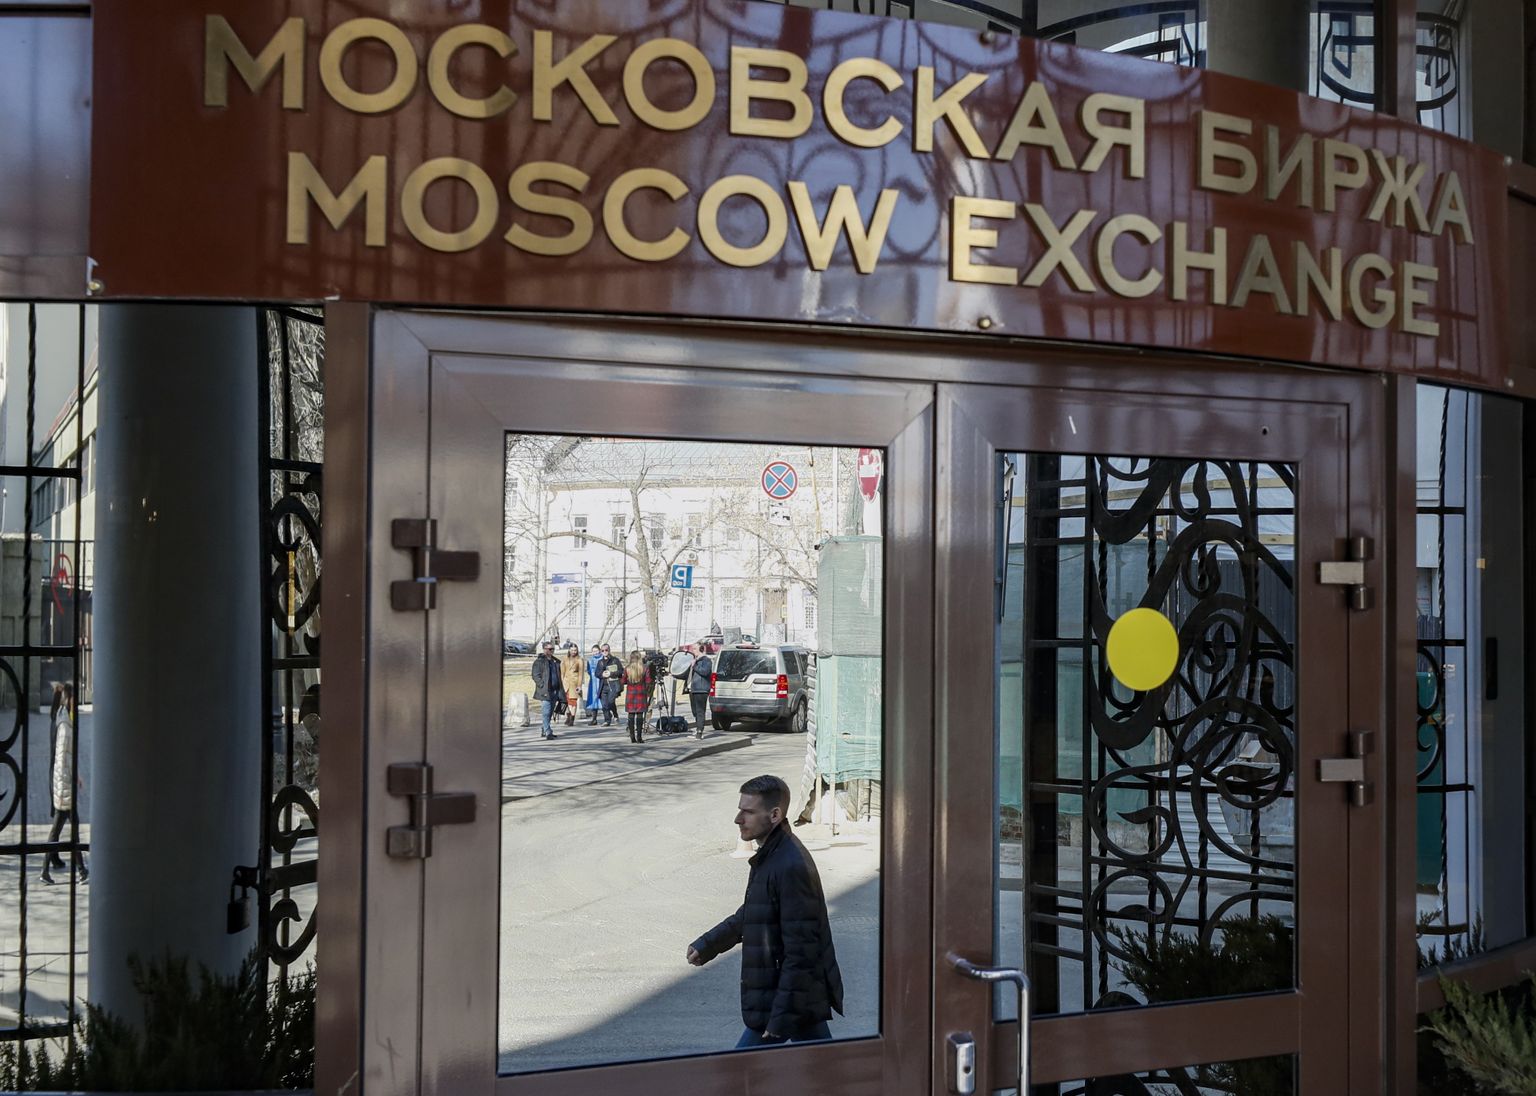 Moskva börsil müüdi eile kõvasti aktsiaid